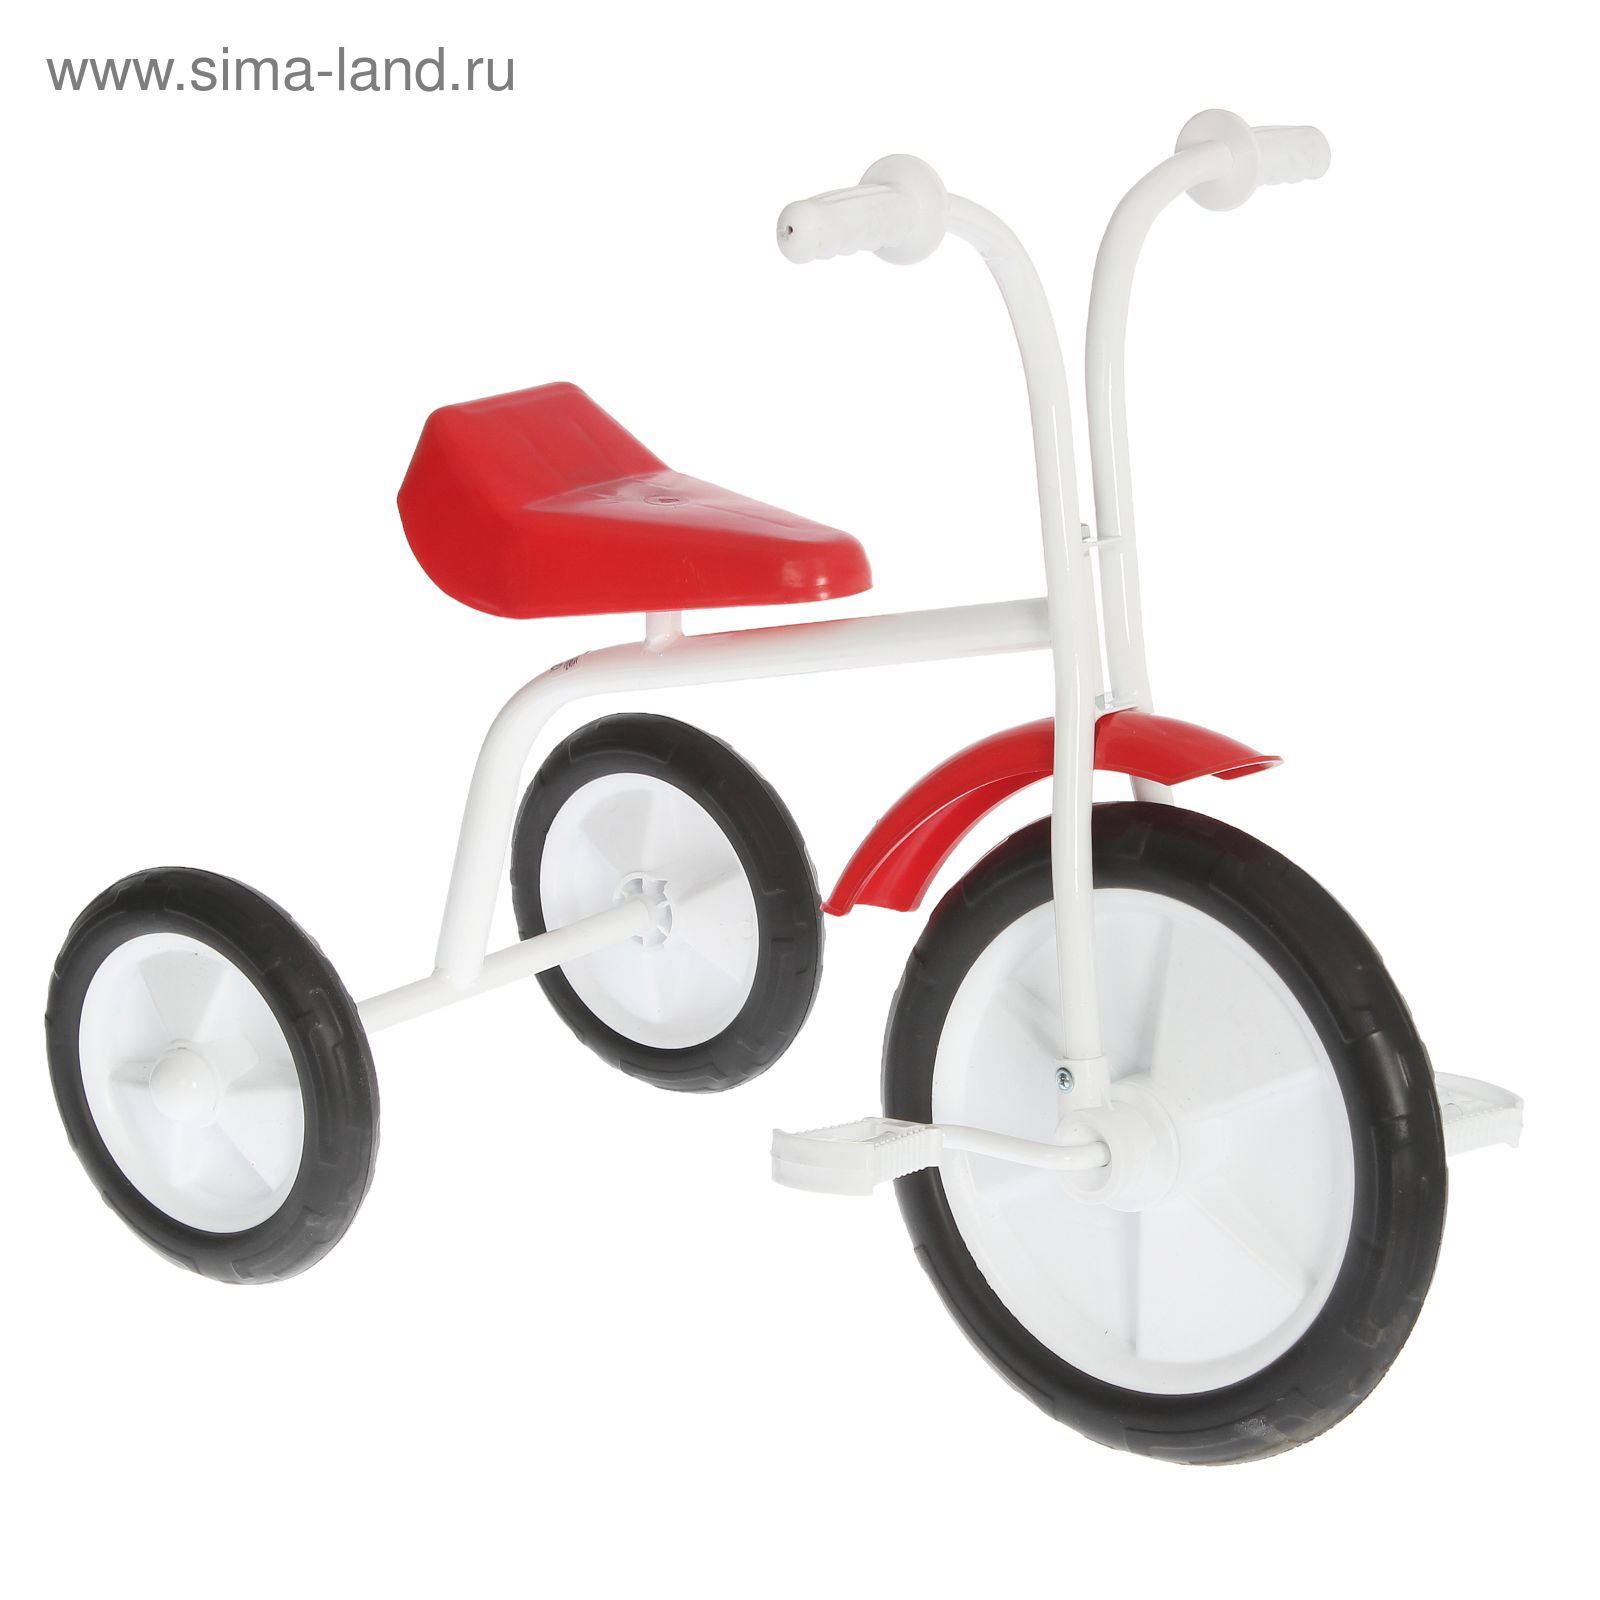 Велосипед трехколесный  "Малыш"  01ПН, цвет красный, фасовка: 1шт.